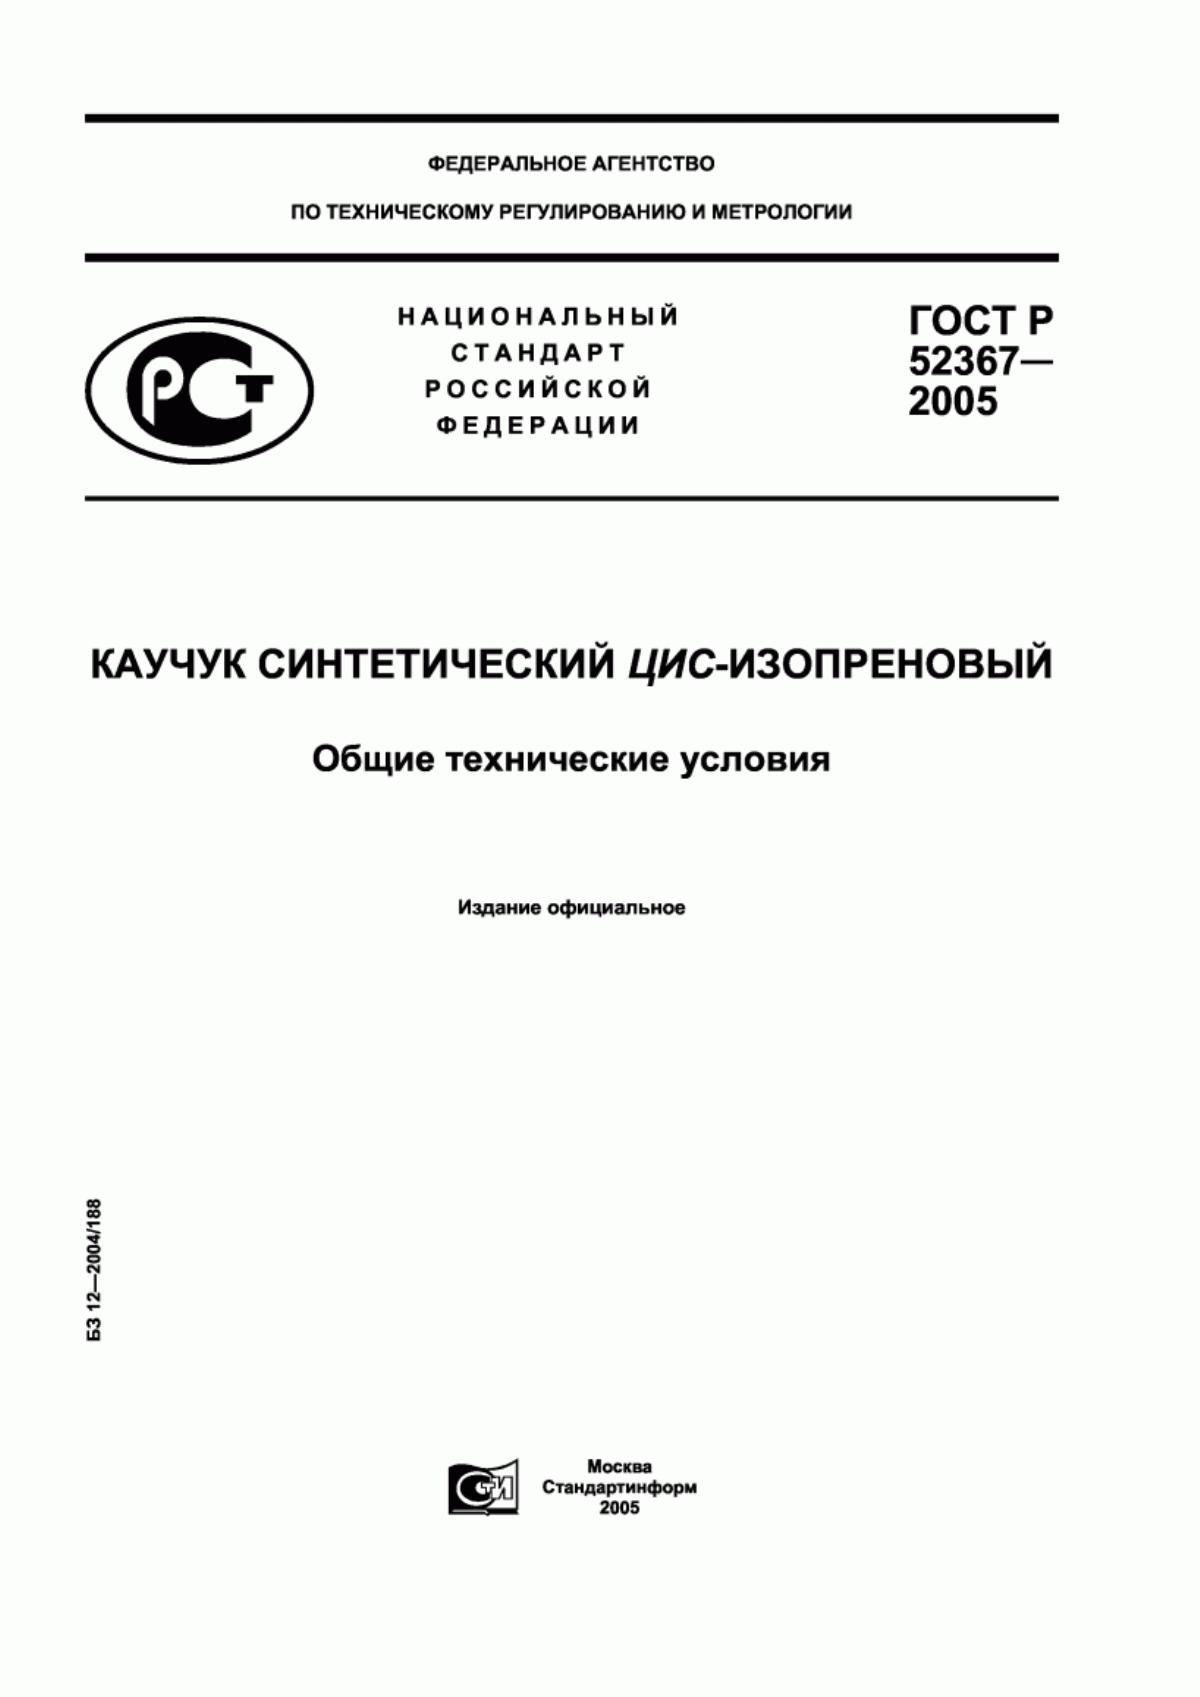 ГОСТ Р 52367-2005 Каучук синтетический цис-изопреновый. Общие технические условия